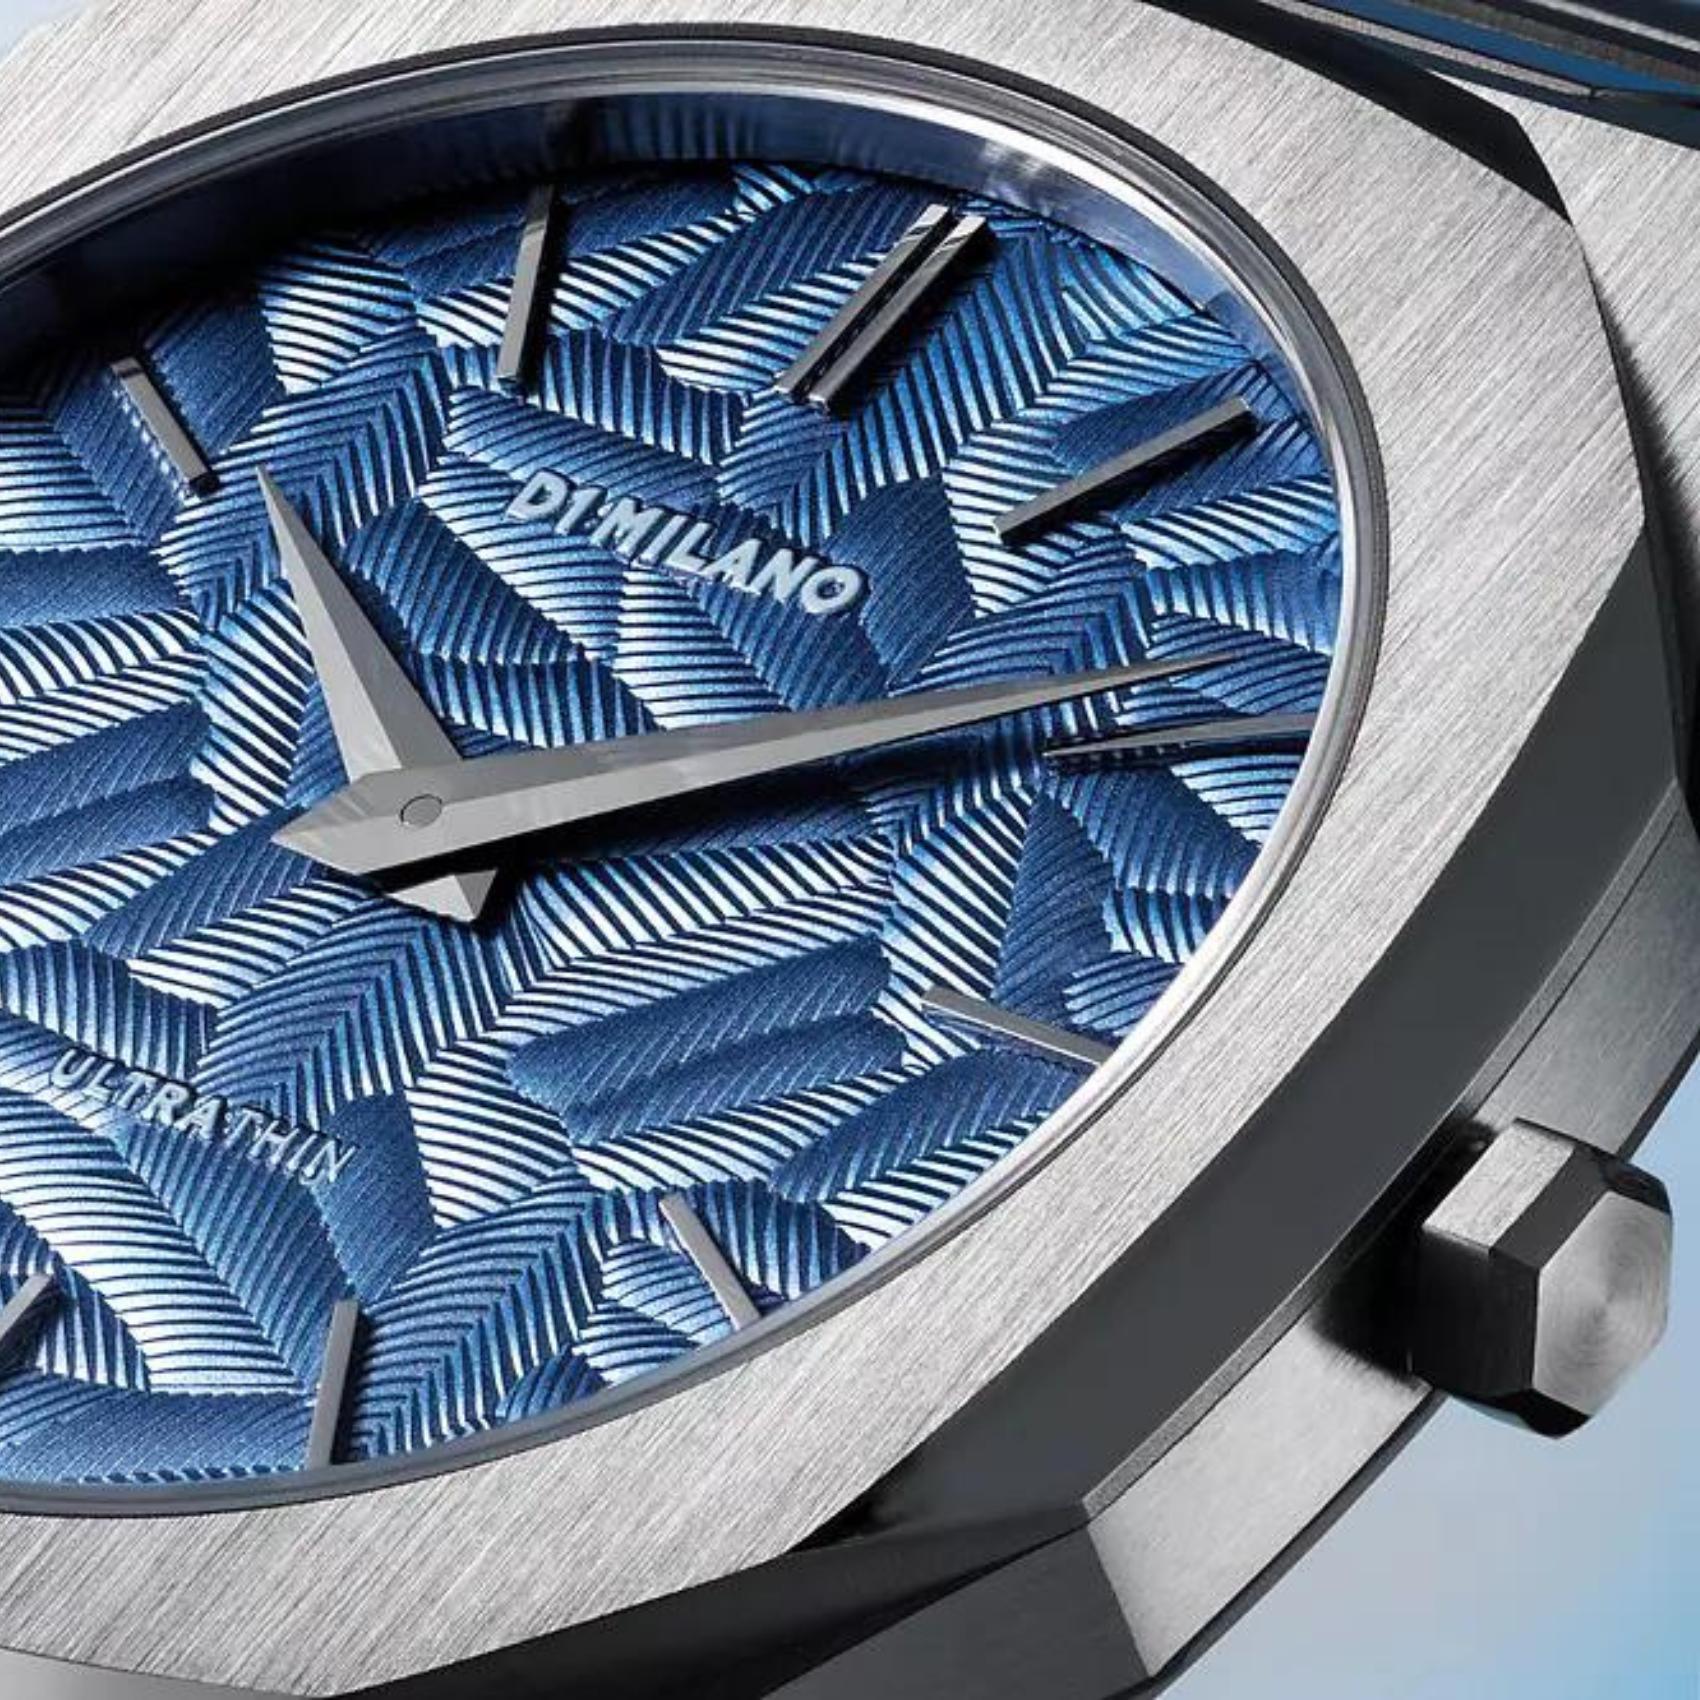 Αντρικό ρολόι D1 Milano Ultra Thin Olympic Blue D1-UTBJ35 με ασημί ατσάλινο μπρασελέ και μπλε καντράν 40mm με οκτάγωνο σχήμα.